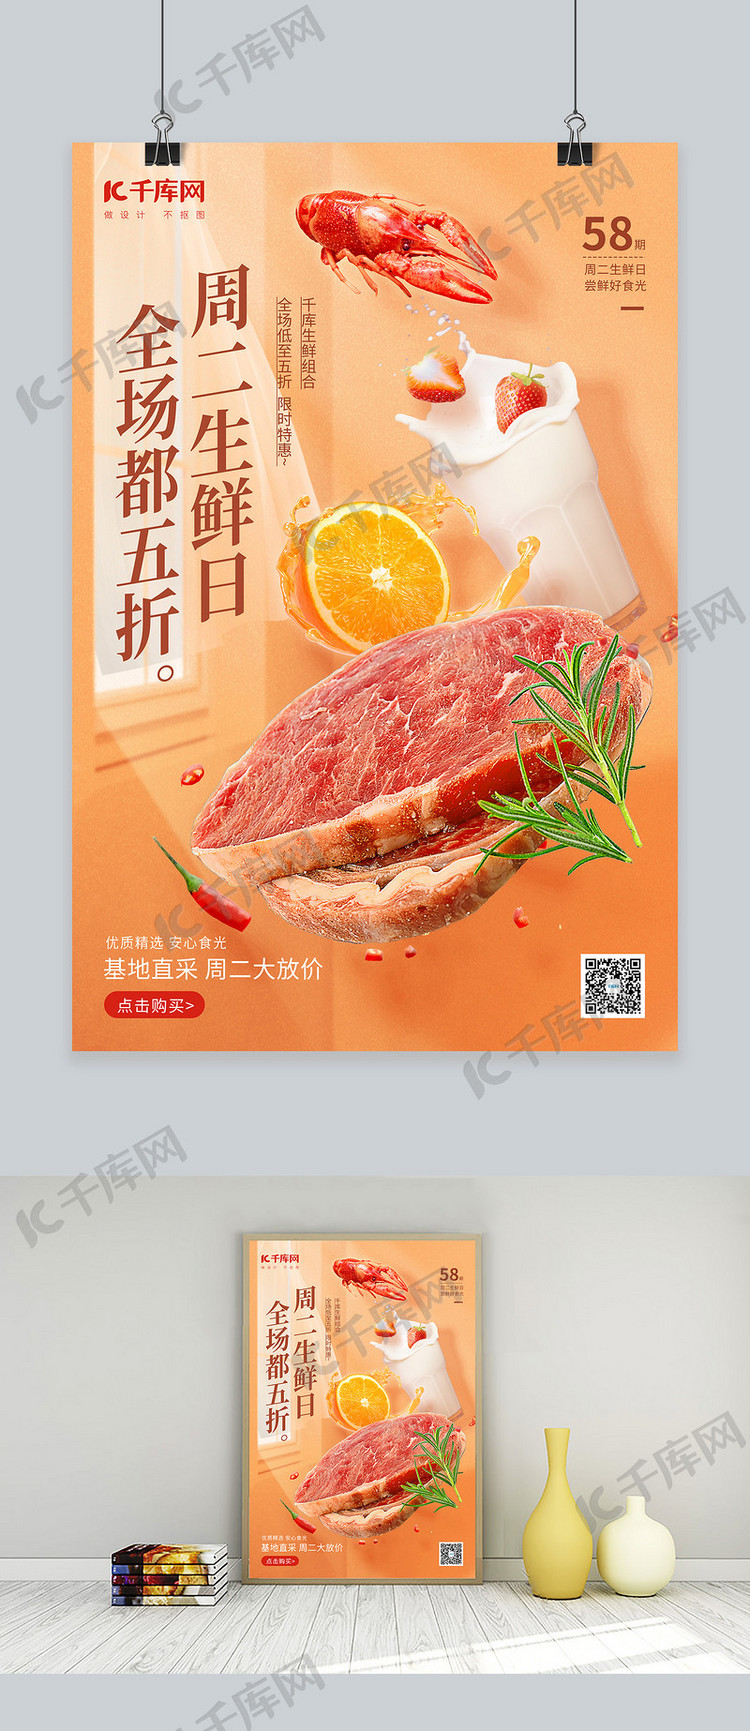 美食生鲜水果蔬菜肉促销橙黄色简约海报